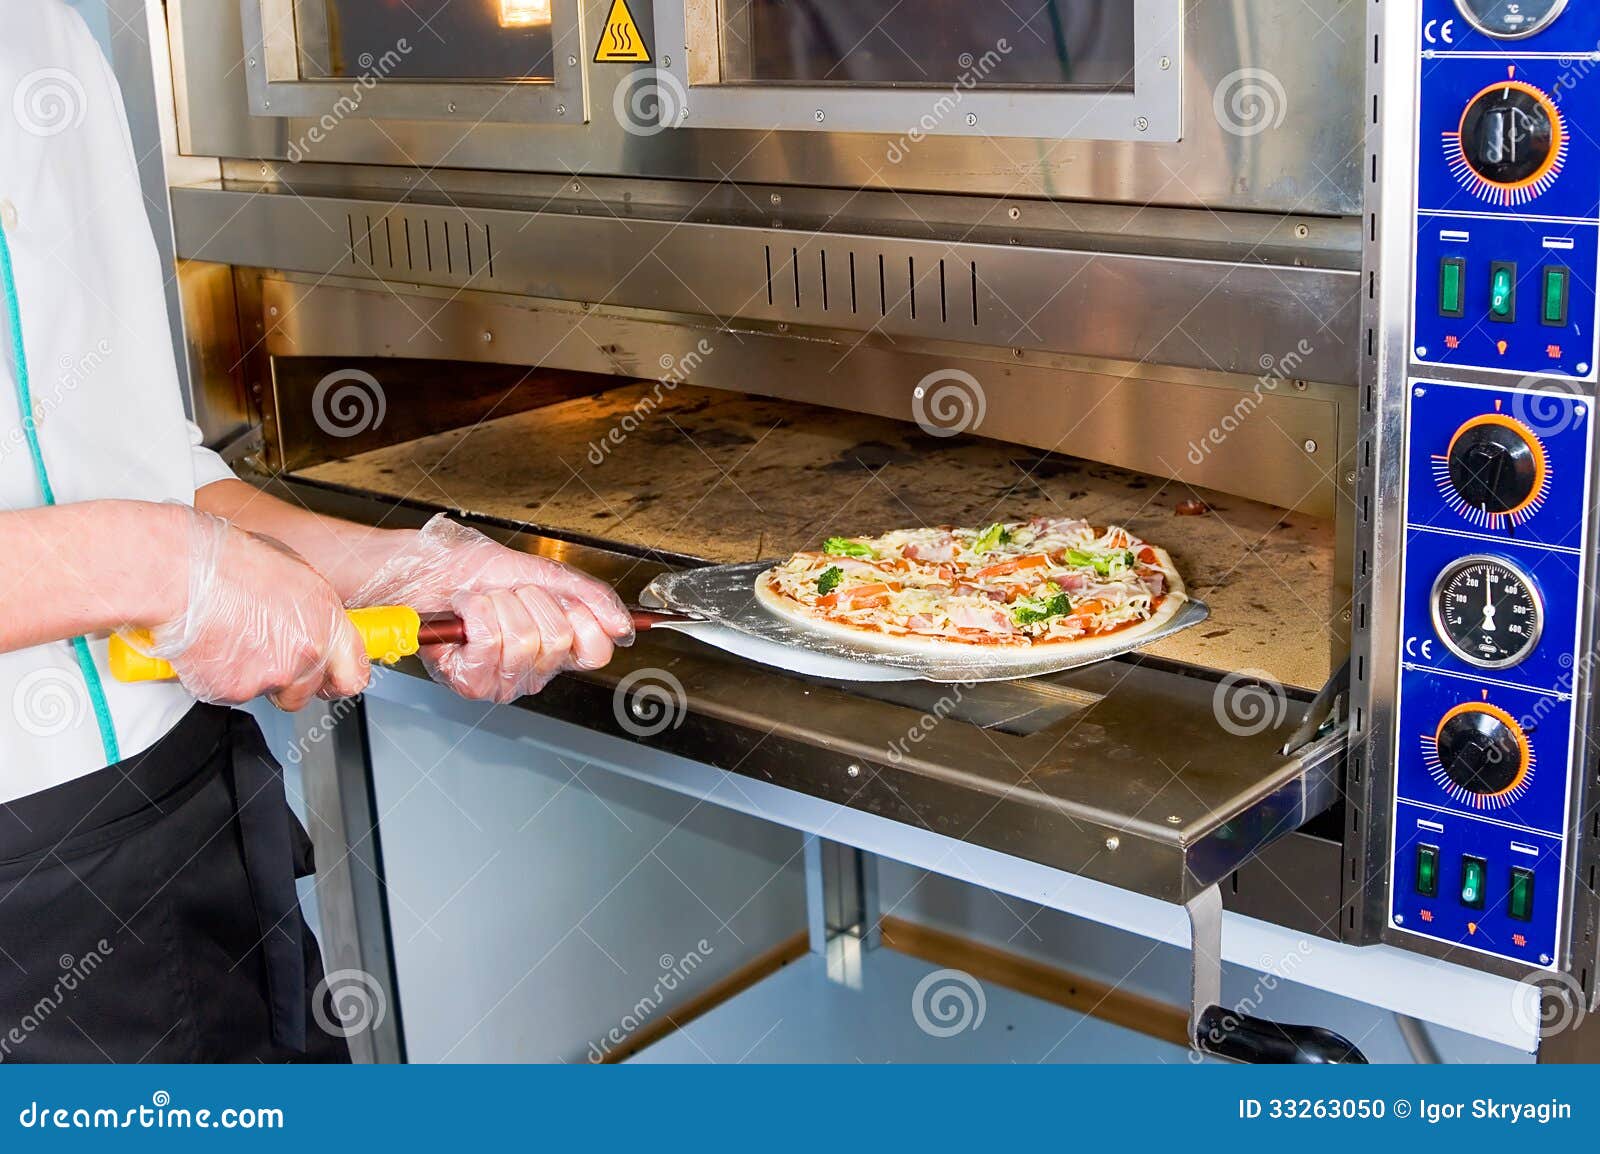 что можно приготовить в пицца печи кроме пиццы фото 90